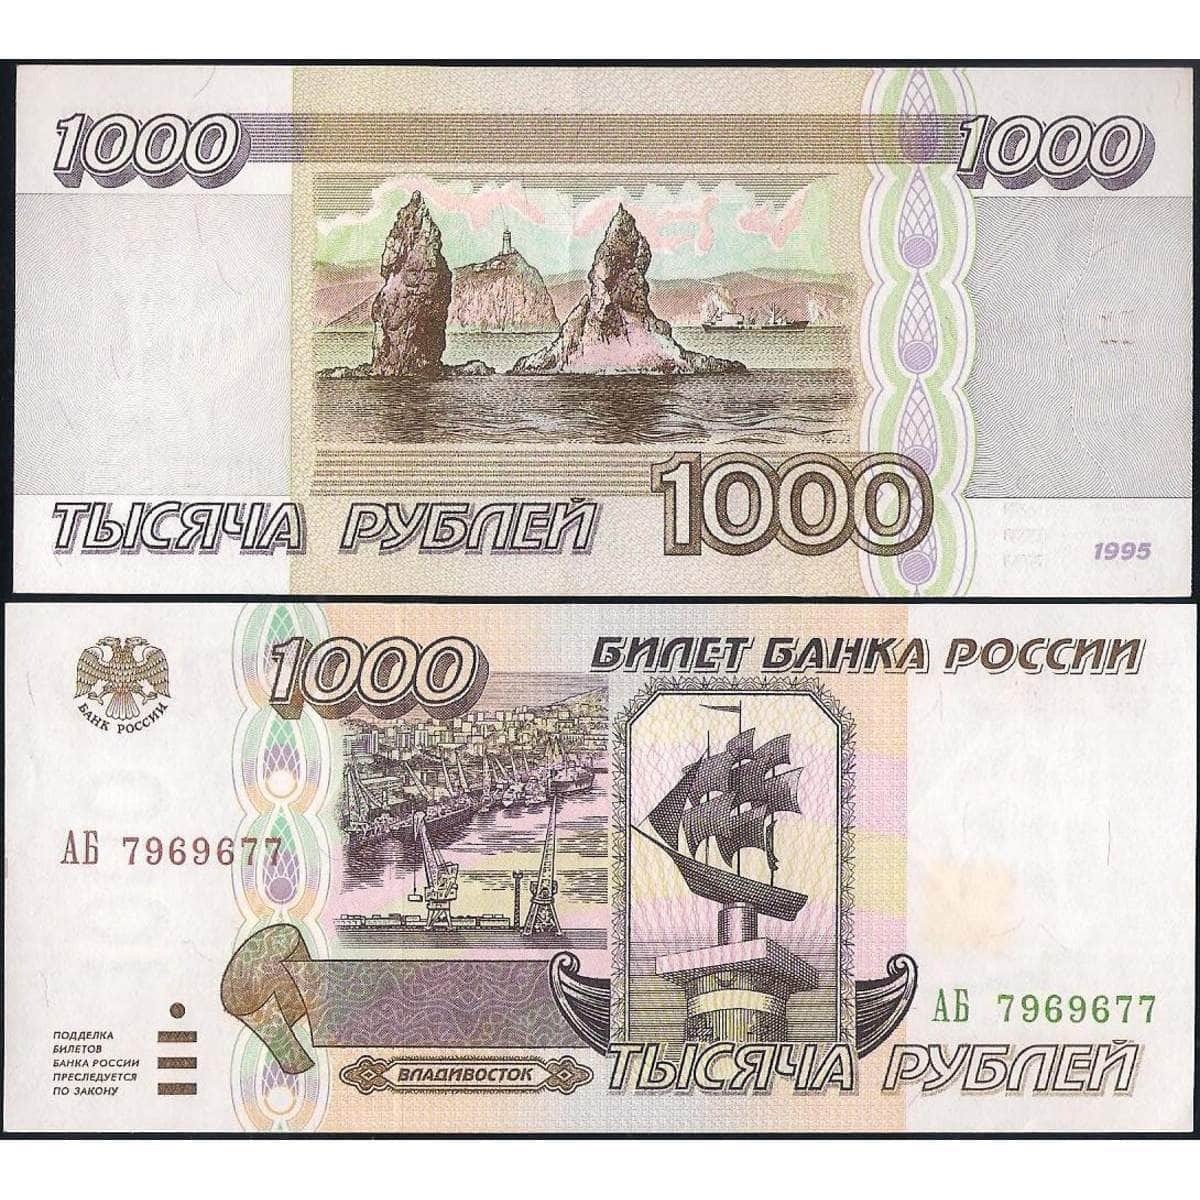 Купюра 1.000 руб. Тысяча рублей 1995 года. 1000 Рублей 1995 года бумажные. 1000 Купюра 1995 года. Деньги 1000 рублей 1995 года.